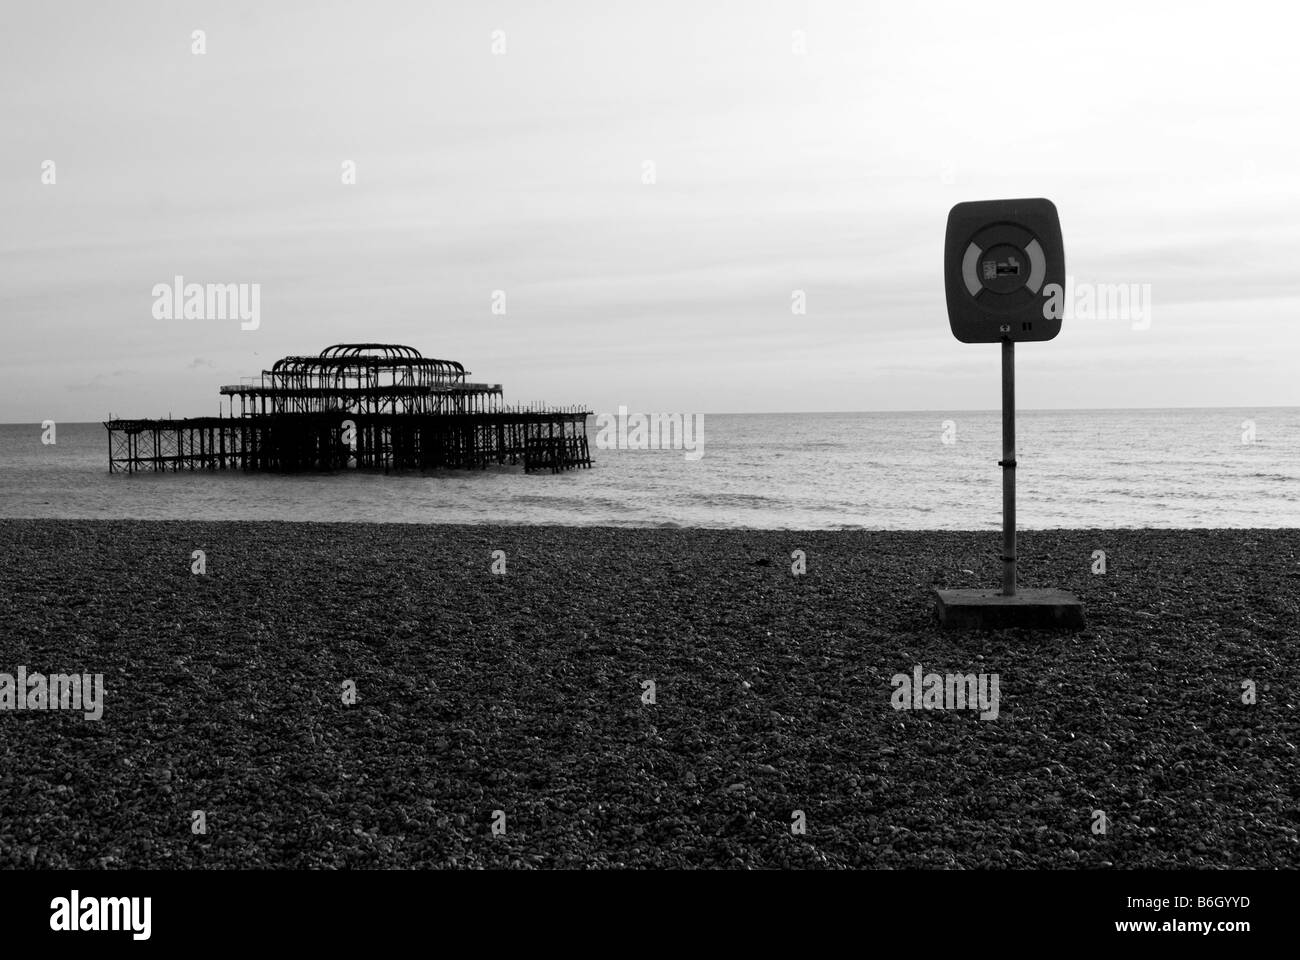 Ein Bild von einem Rettungsring Rettung mit den Resten der Brightons West Pier im Hintergrund an einem ruhigen Tag am Strand Stockfoto